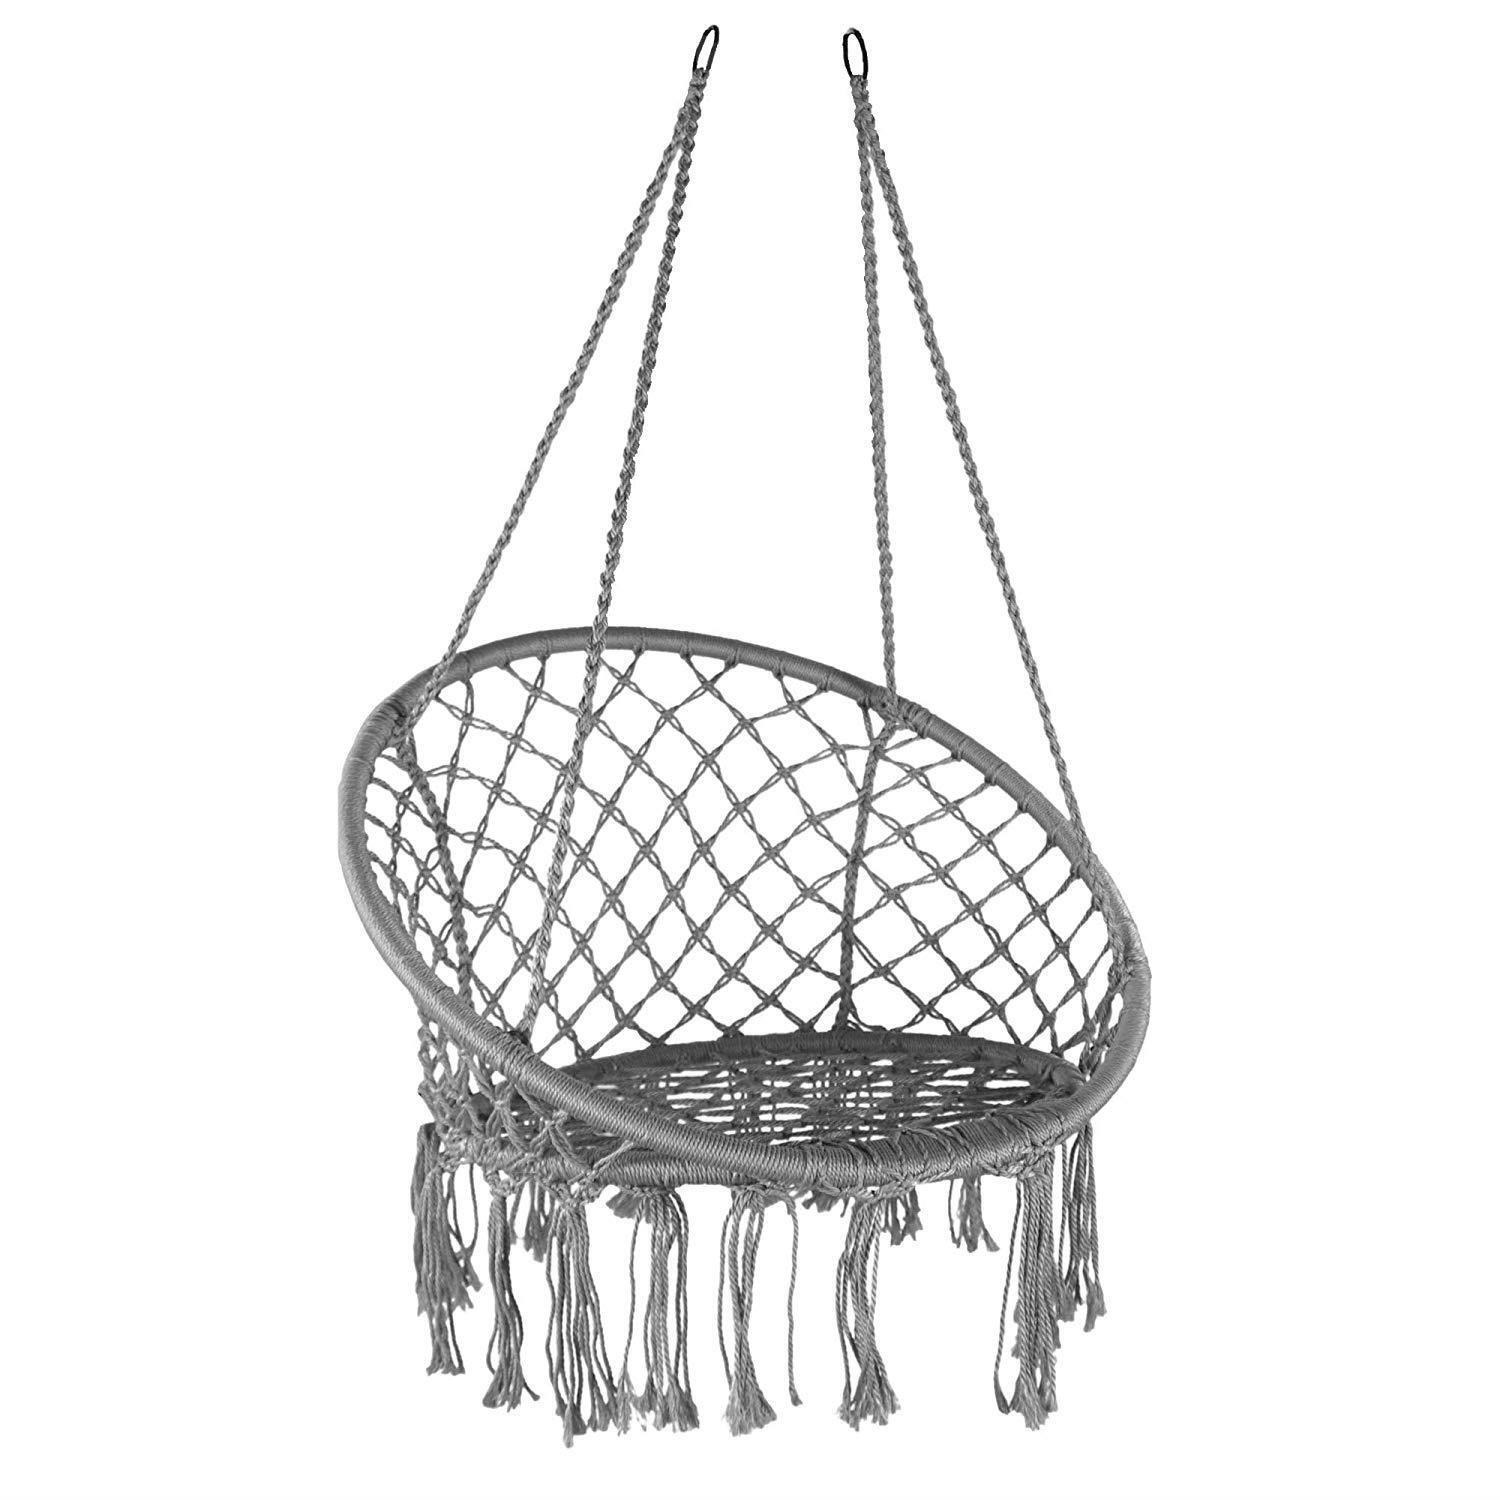 Hanging Hammock Chair Outdoor Indoor Garden Swing Seat - image 1